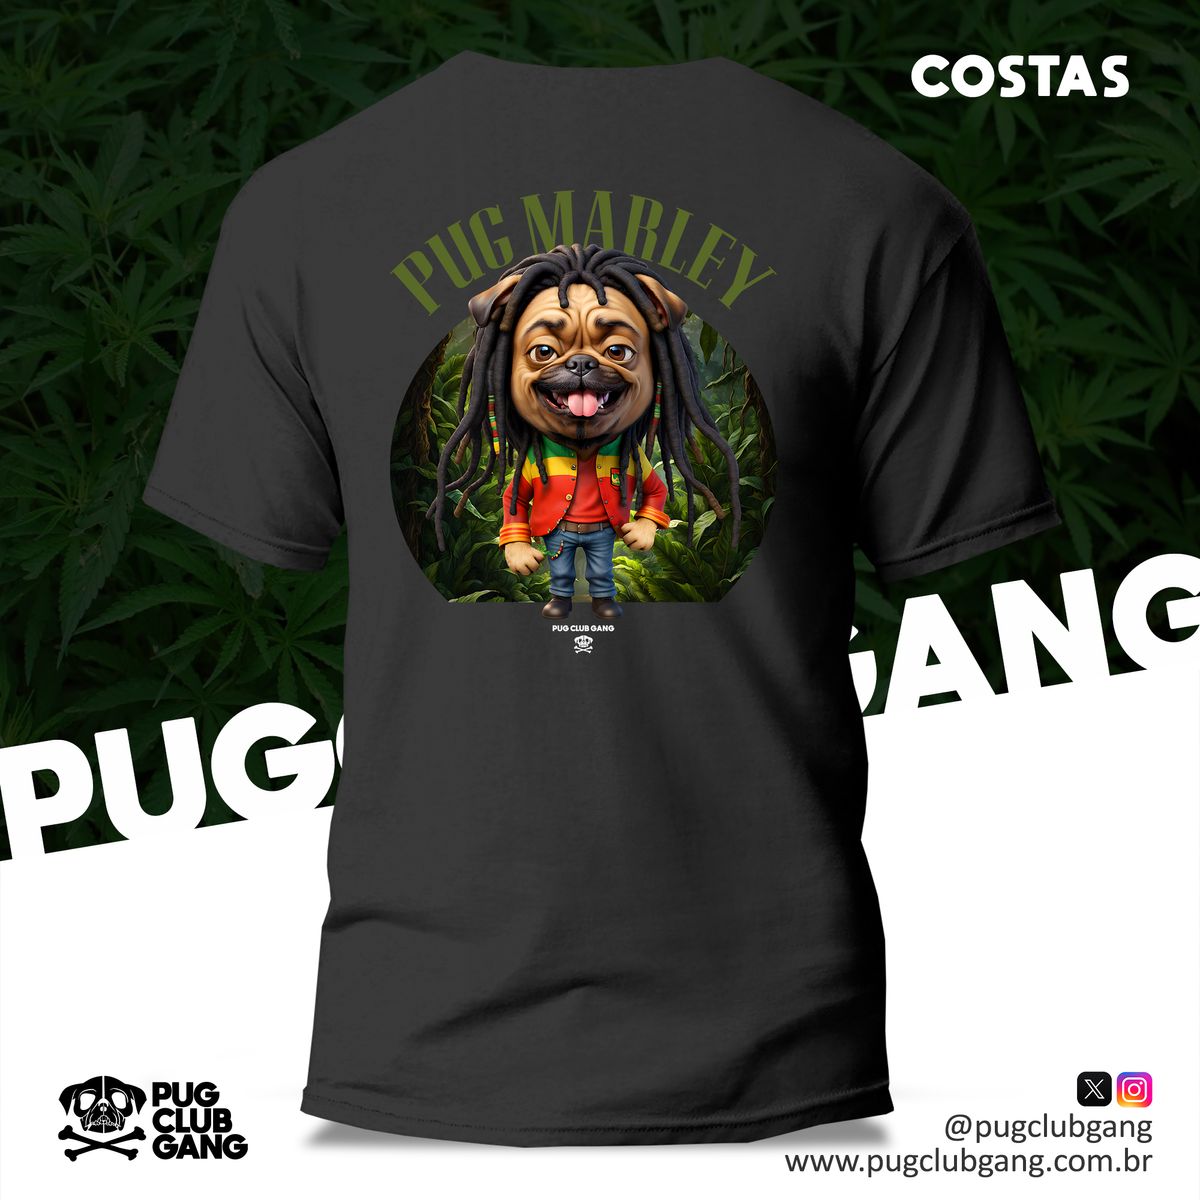 Nome do produto: Camiseta Pug (Costas)- Pug Marley